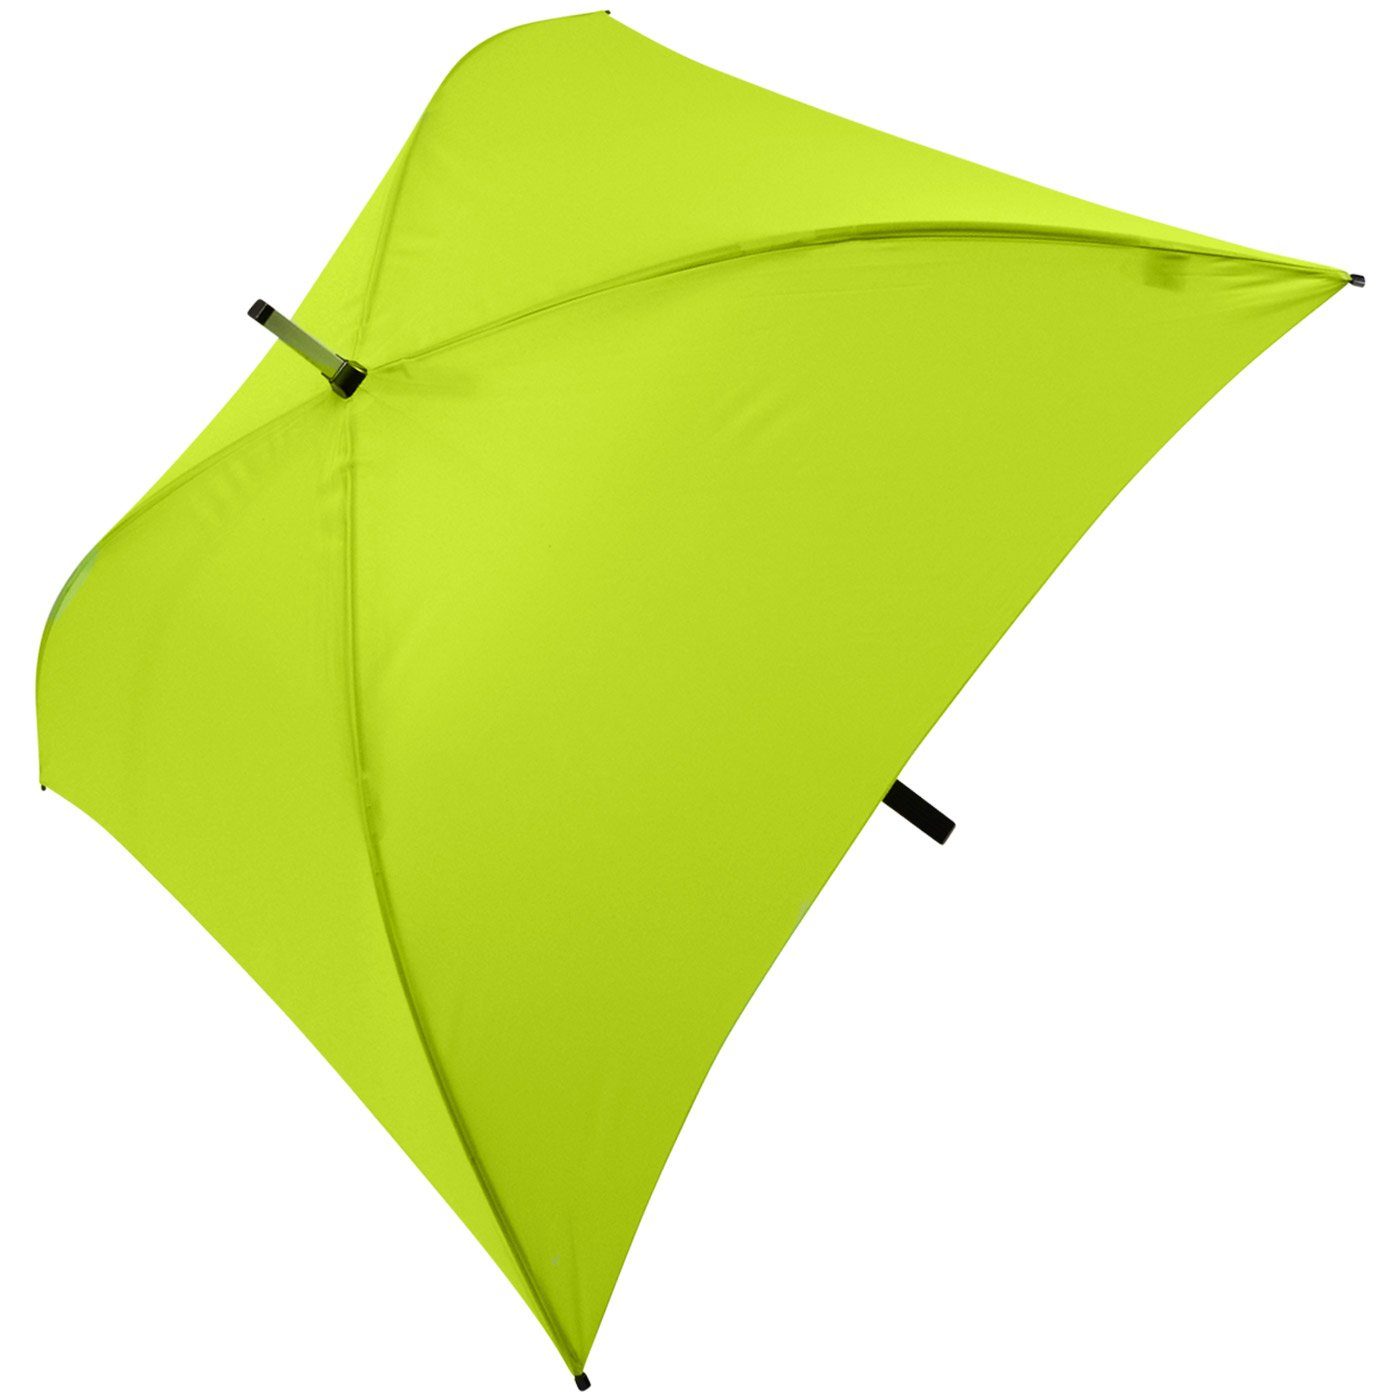 Regenschirm ganz hellgrün besondere Impliva Langregenschirm Square® quadratischer voll Regenschirm, der All